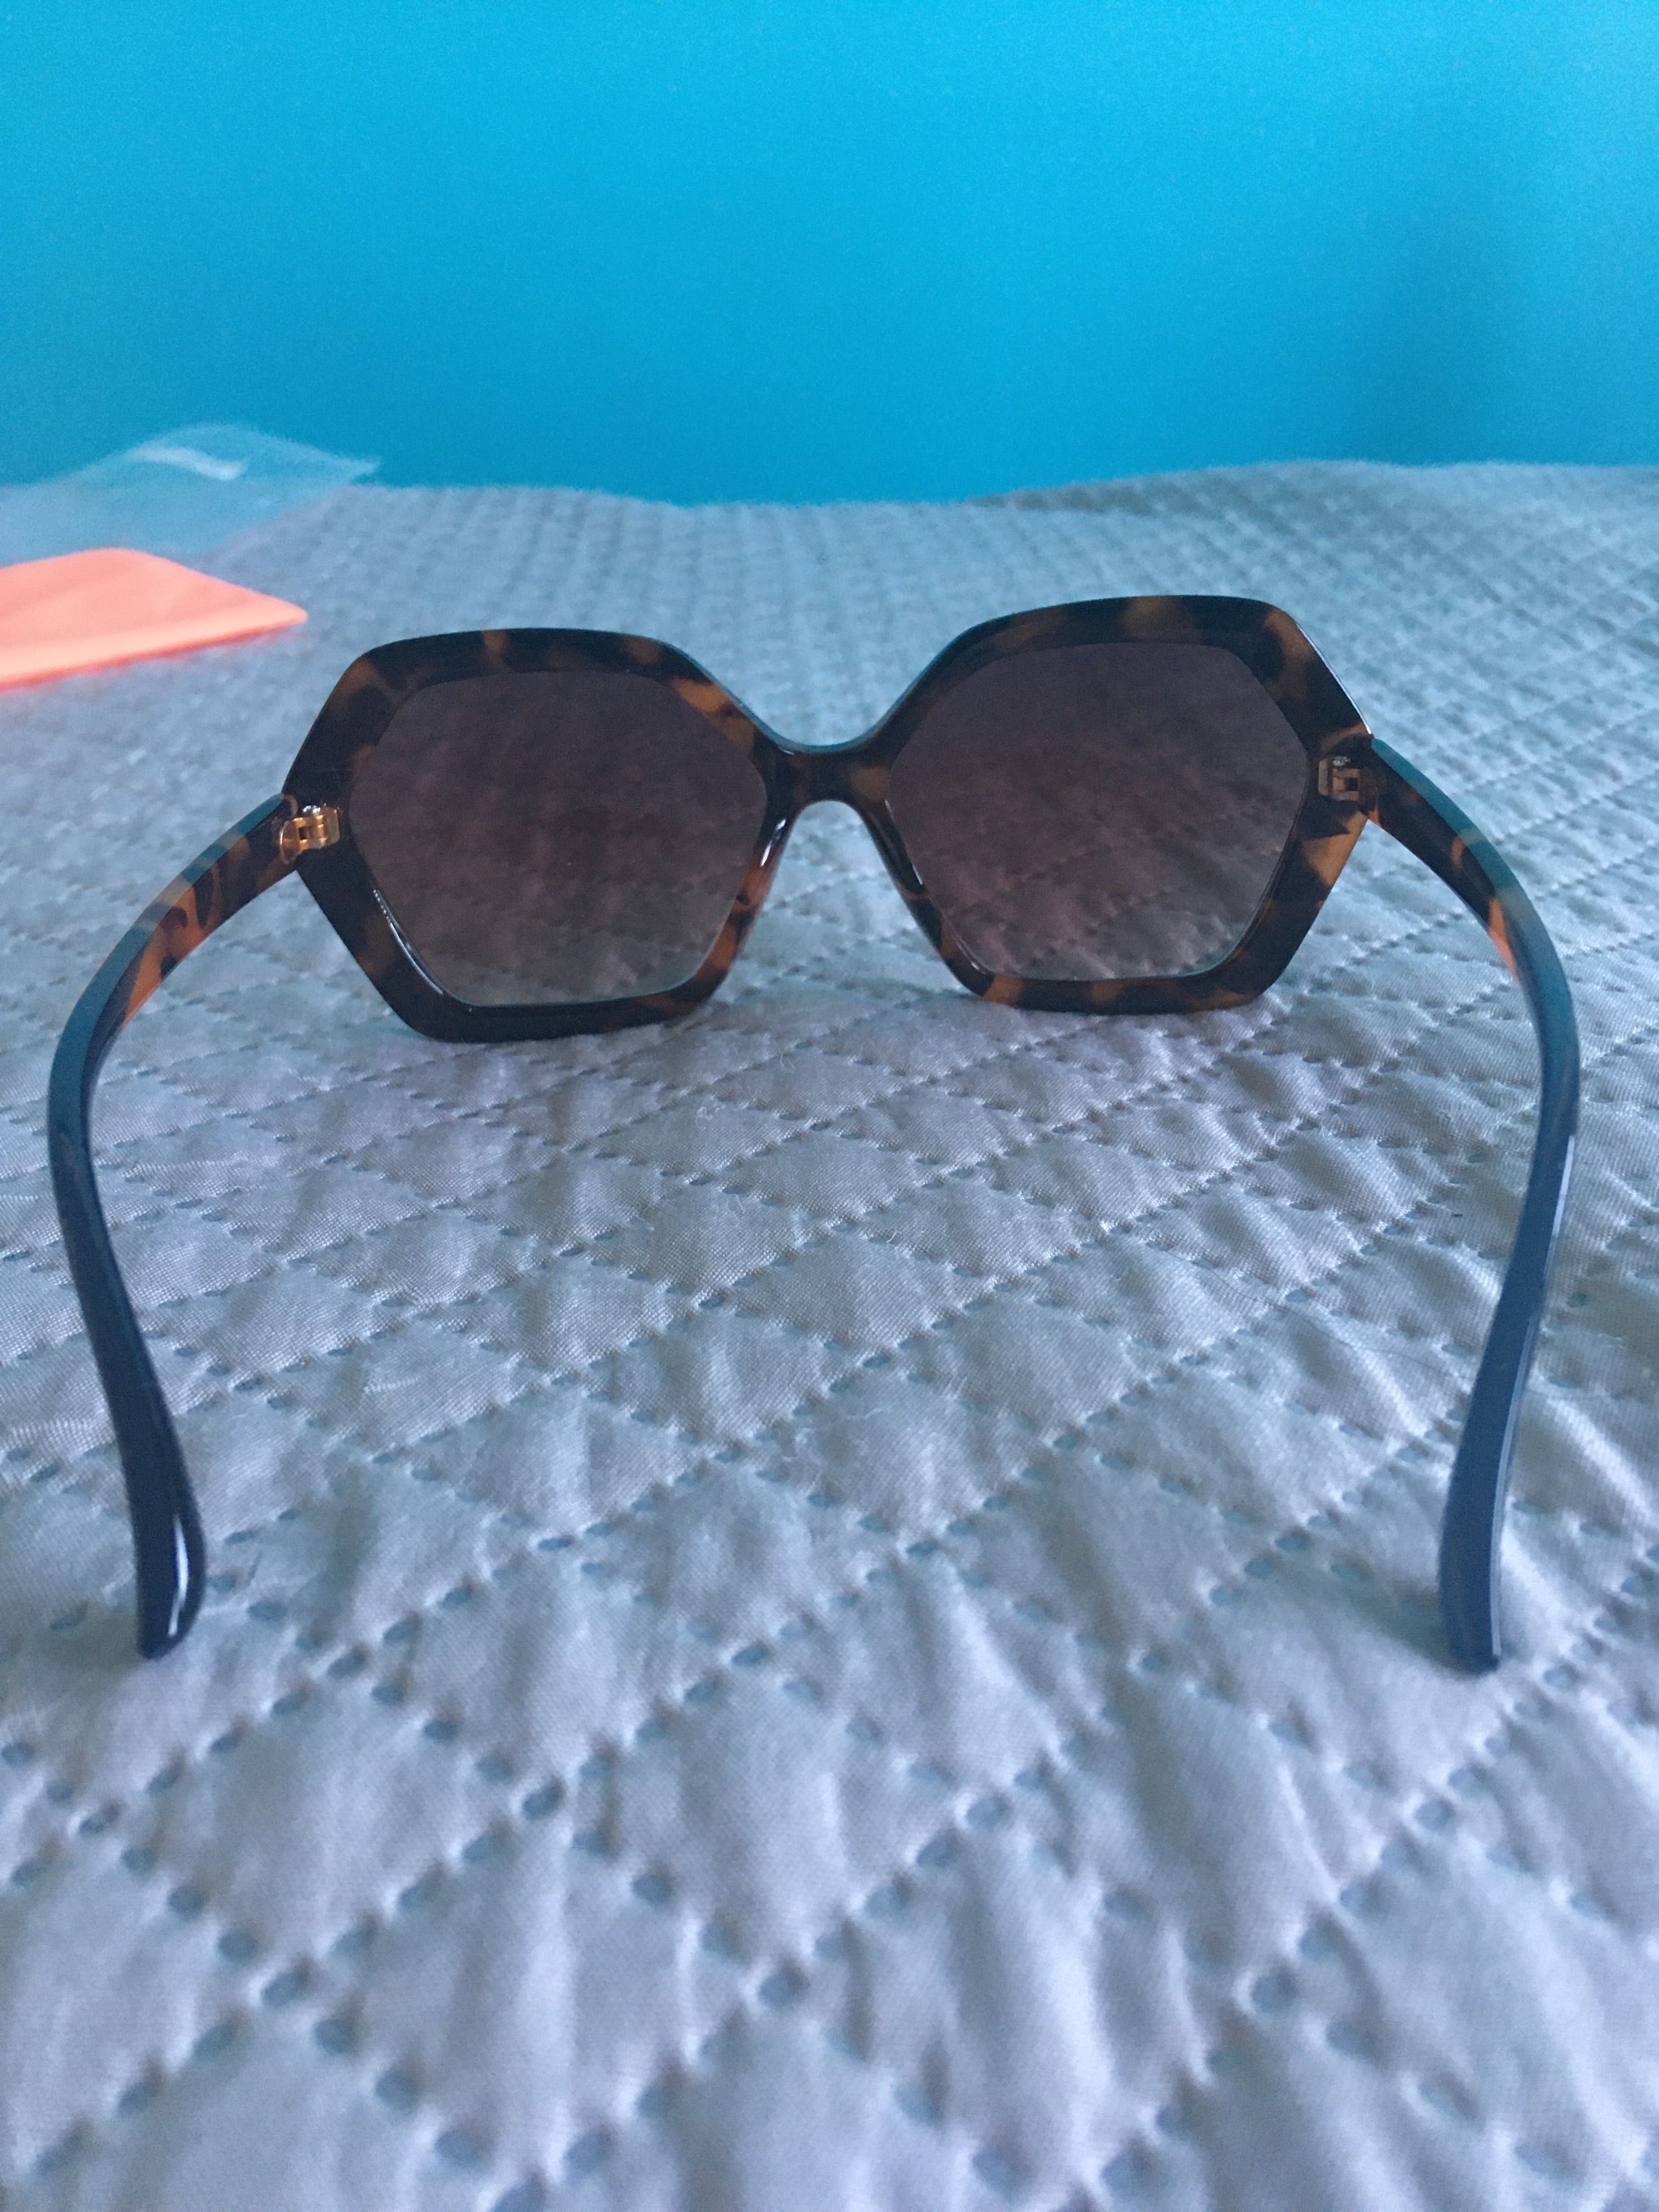 Óculos de Sol Seaside novos